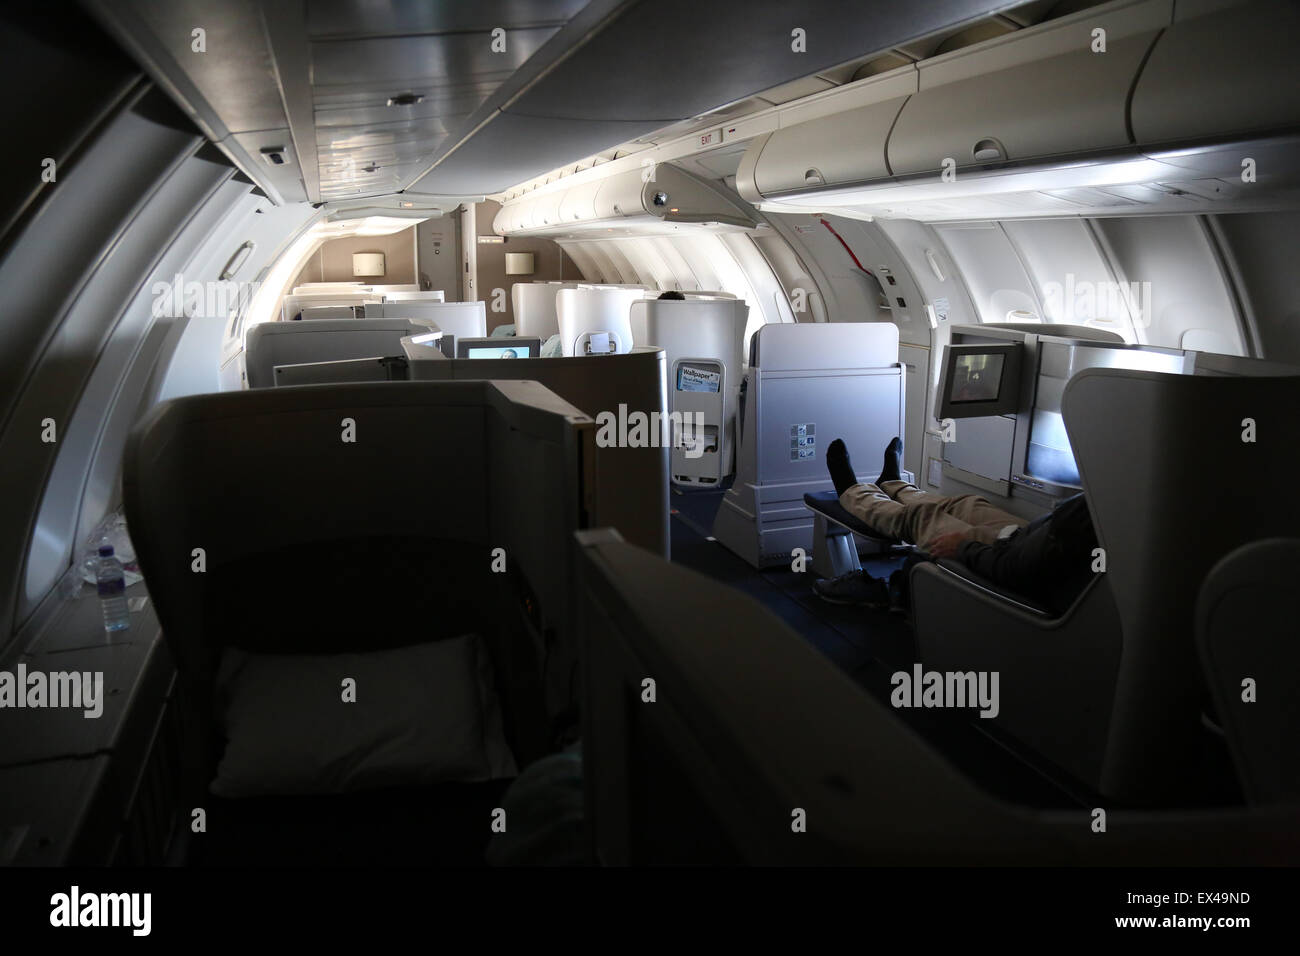 British Airways Business Class 747 Upper Deck